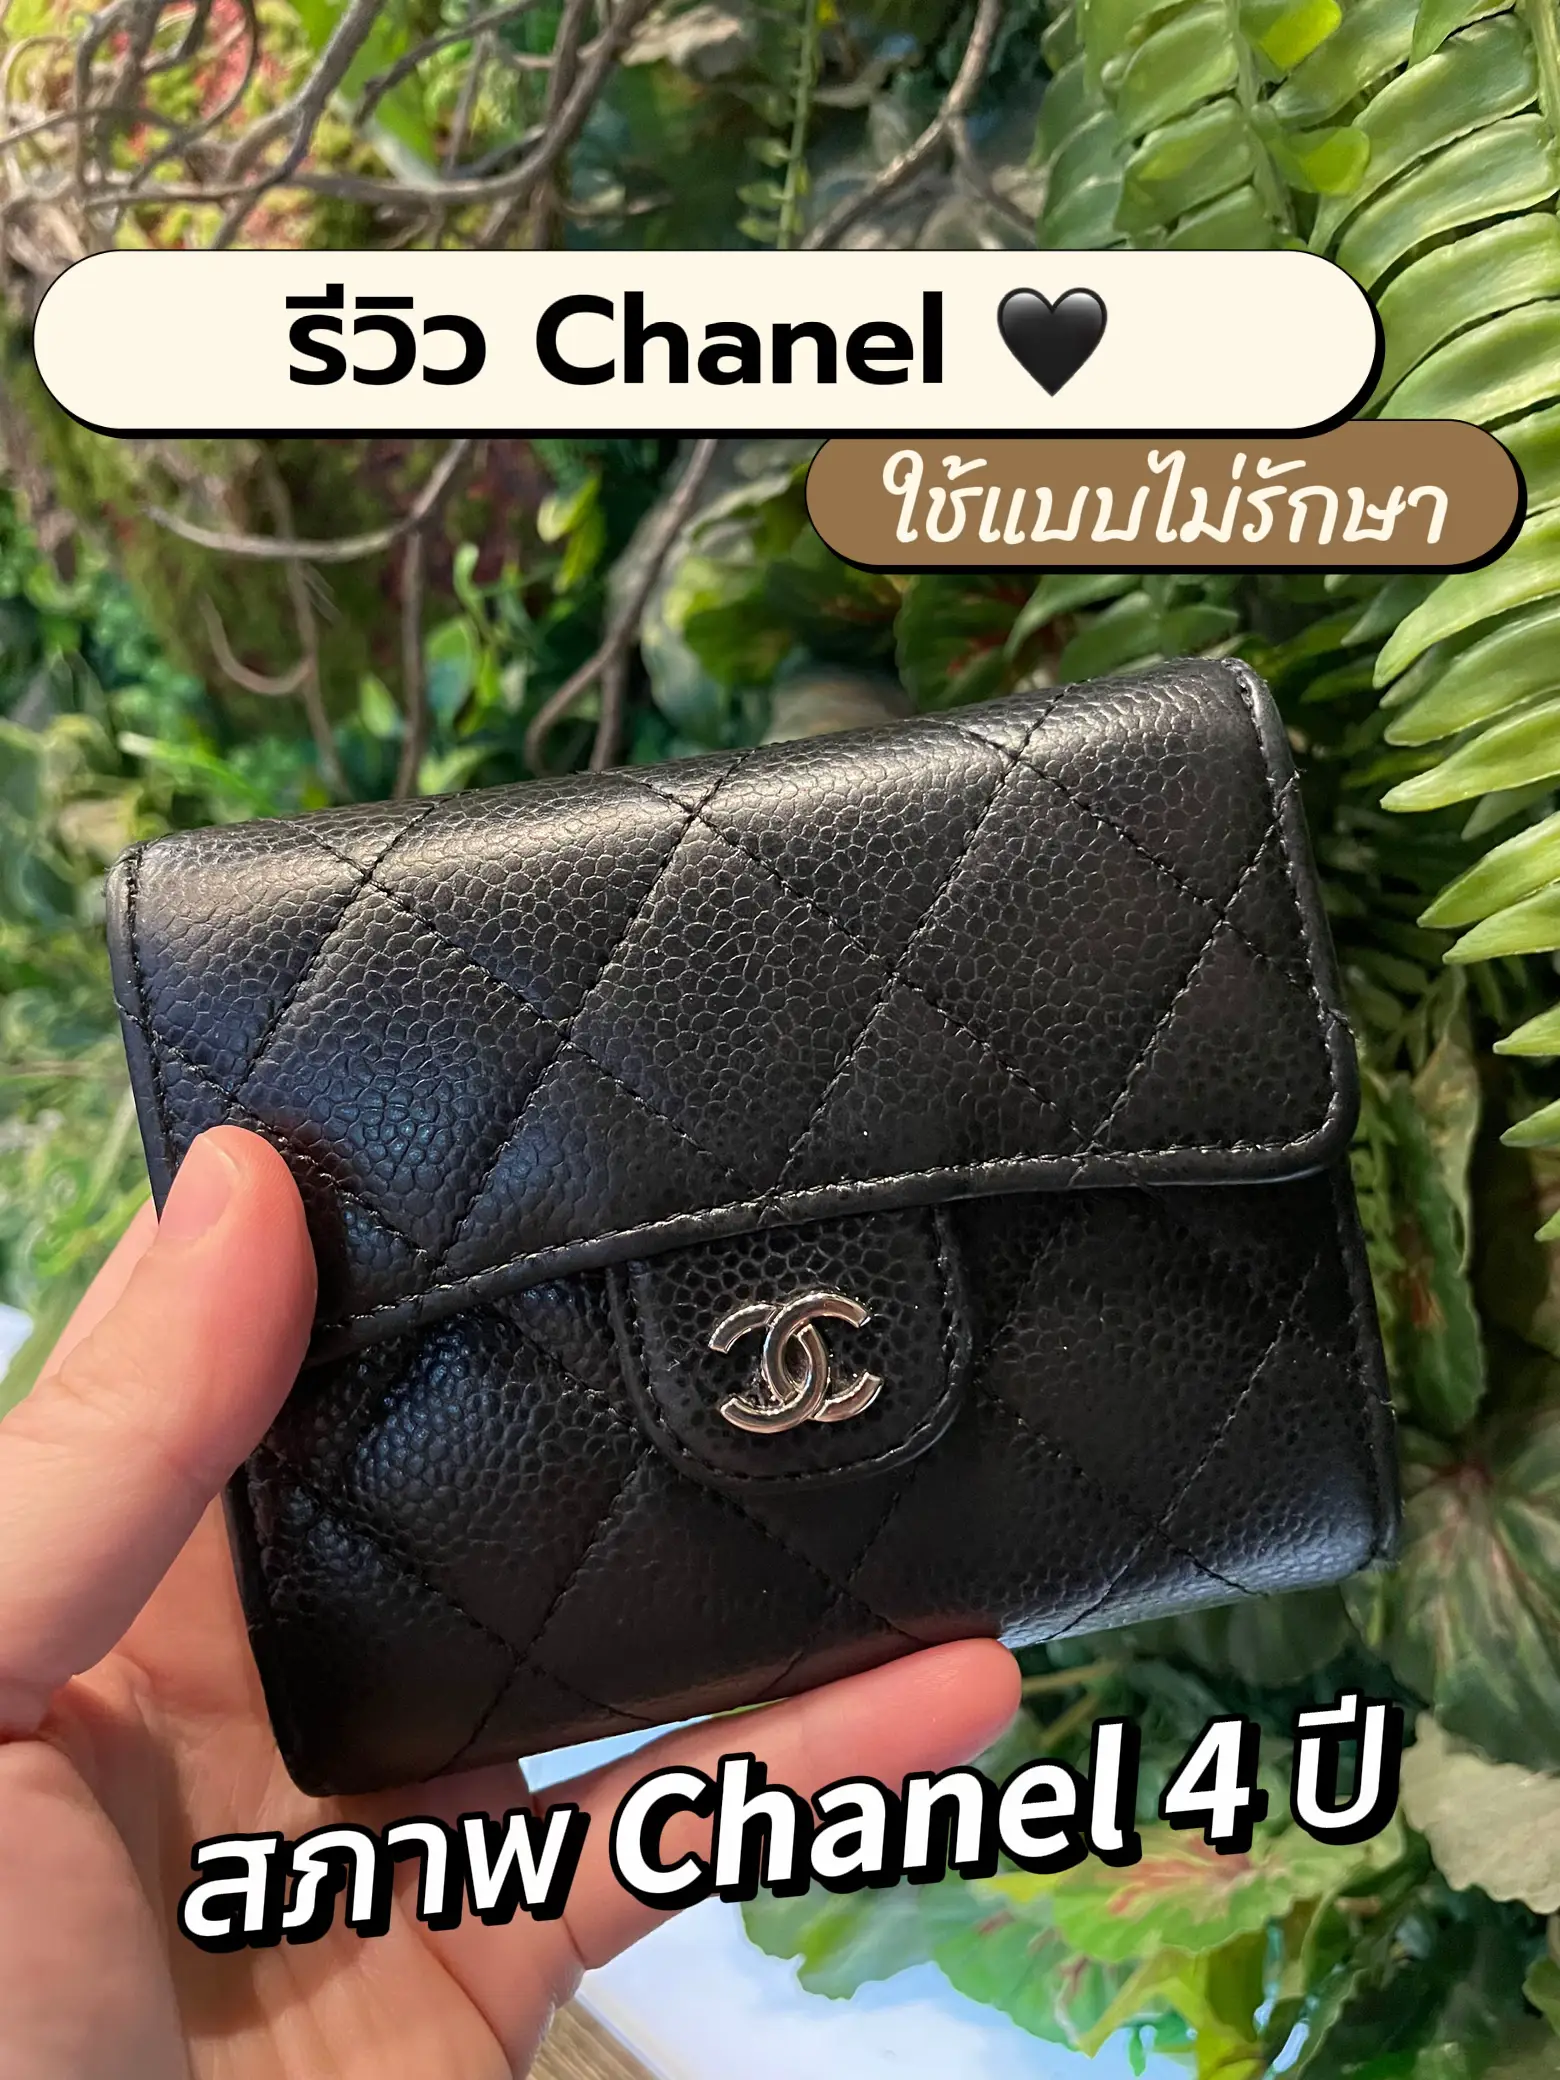 สภาพ Chanel 4 ปี 🖤, Gallery posted by Katainoii 🐰